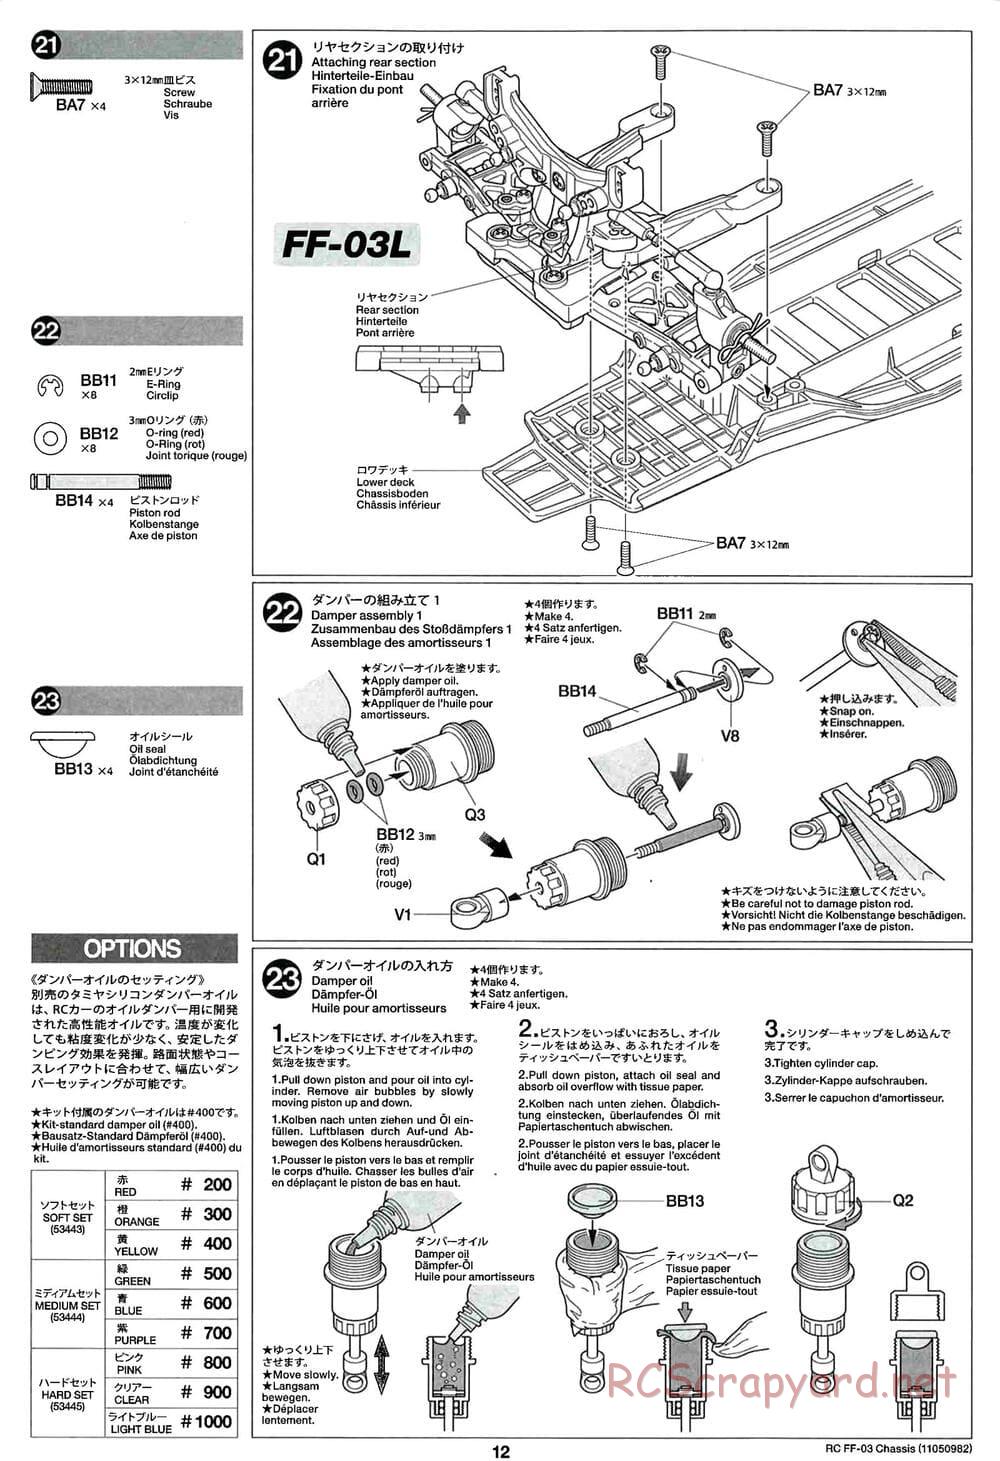 Tamiya - Castrol Honda Civic VTi - FF-03 Chassis - Manual - Page 12